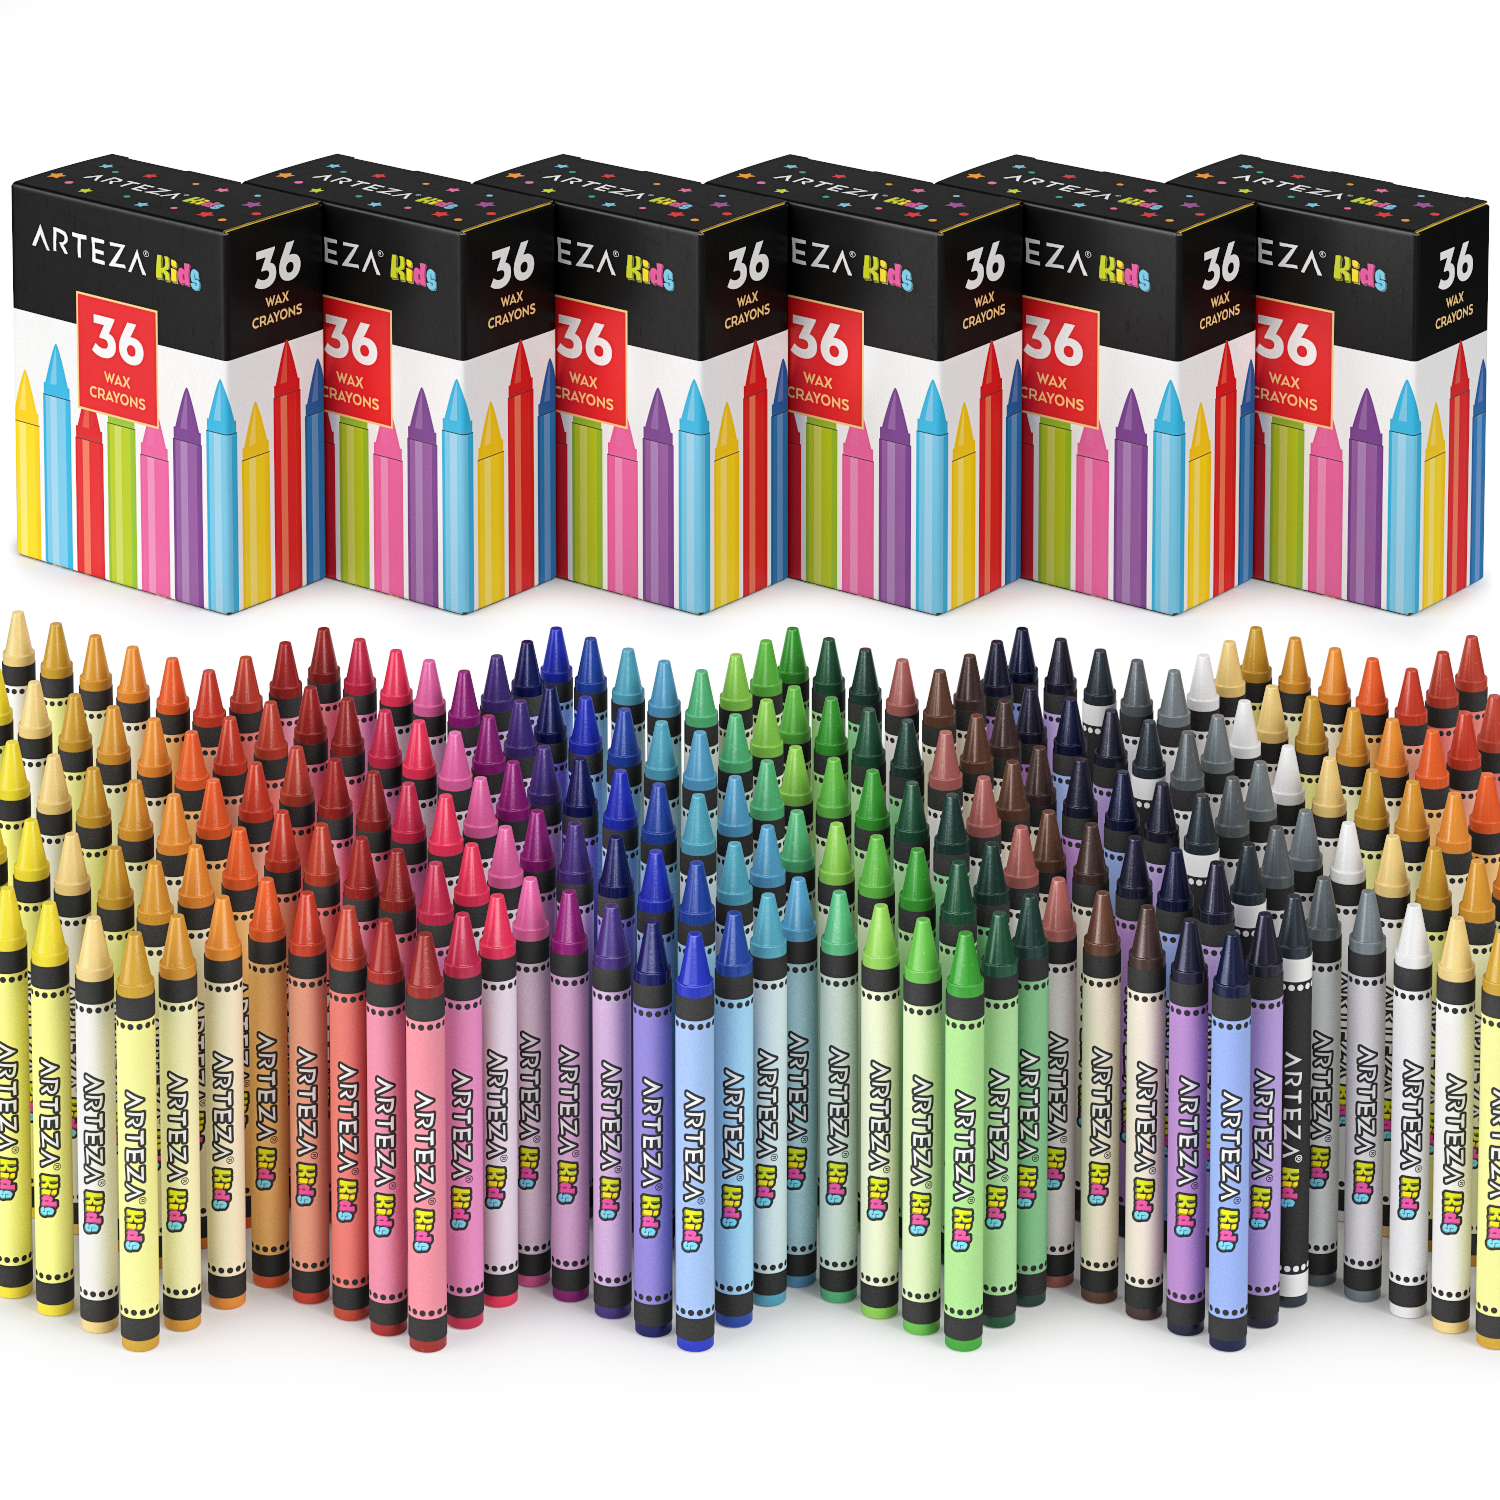 https://arteza.com/cdn/shop/products/kids-regular-crayons-sets-of-36-pack-of-216_Lwa37Jj5.png?v=1652894058&width=1946